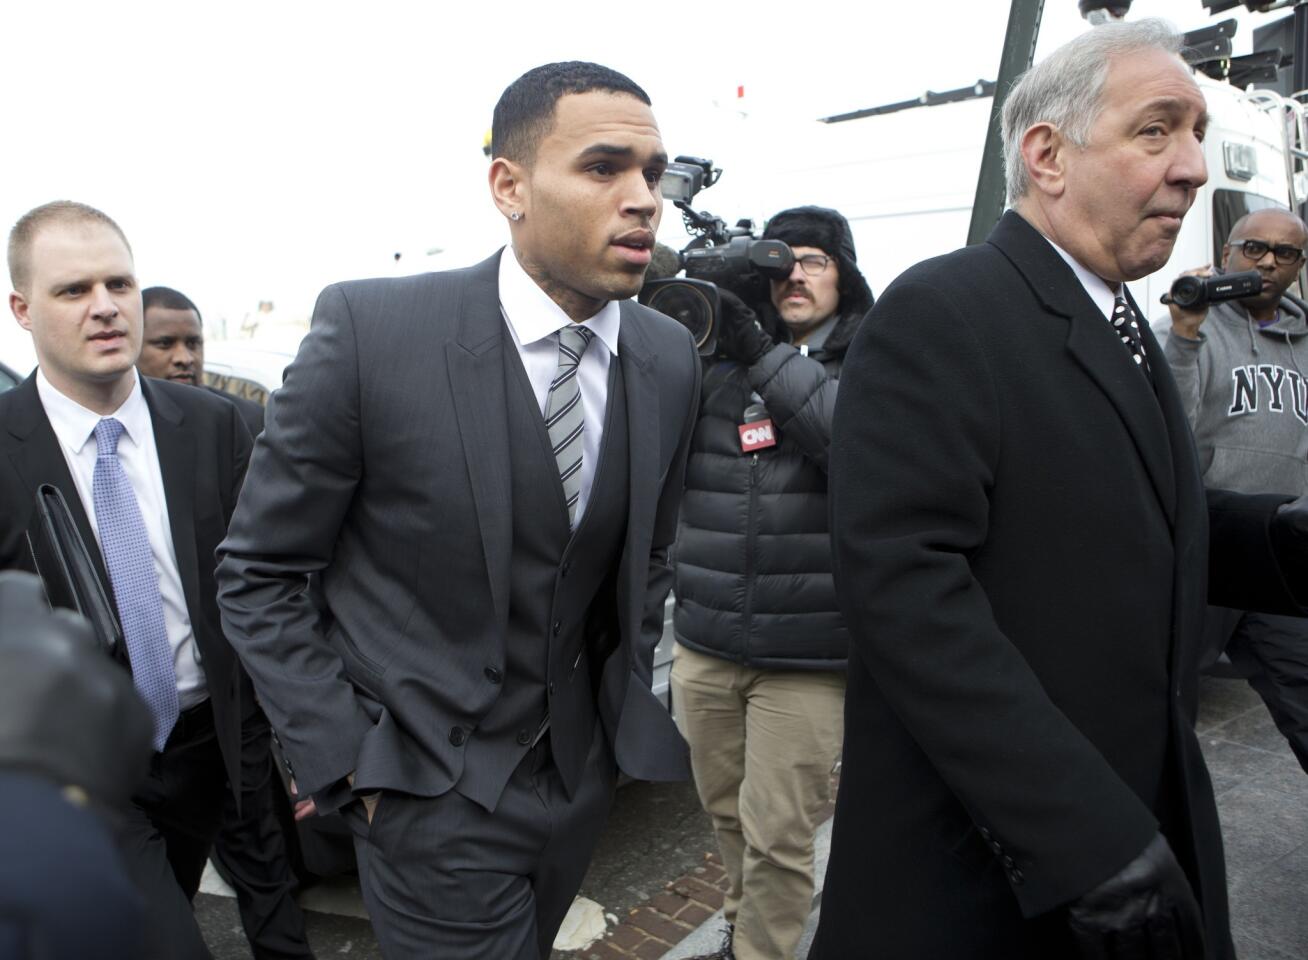 Chris Brown rejects plea deal in D.C. assault case